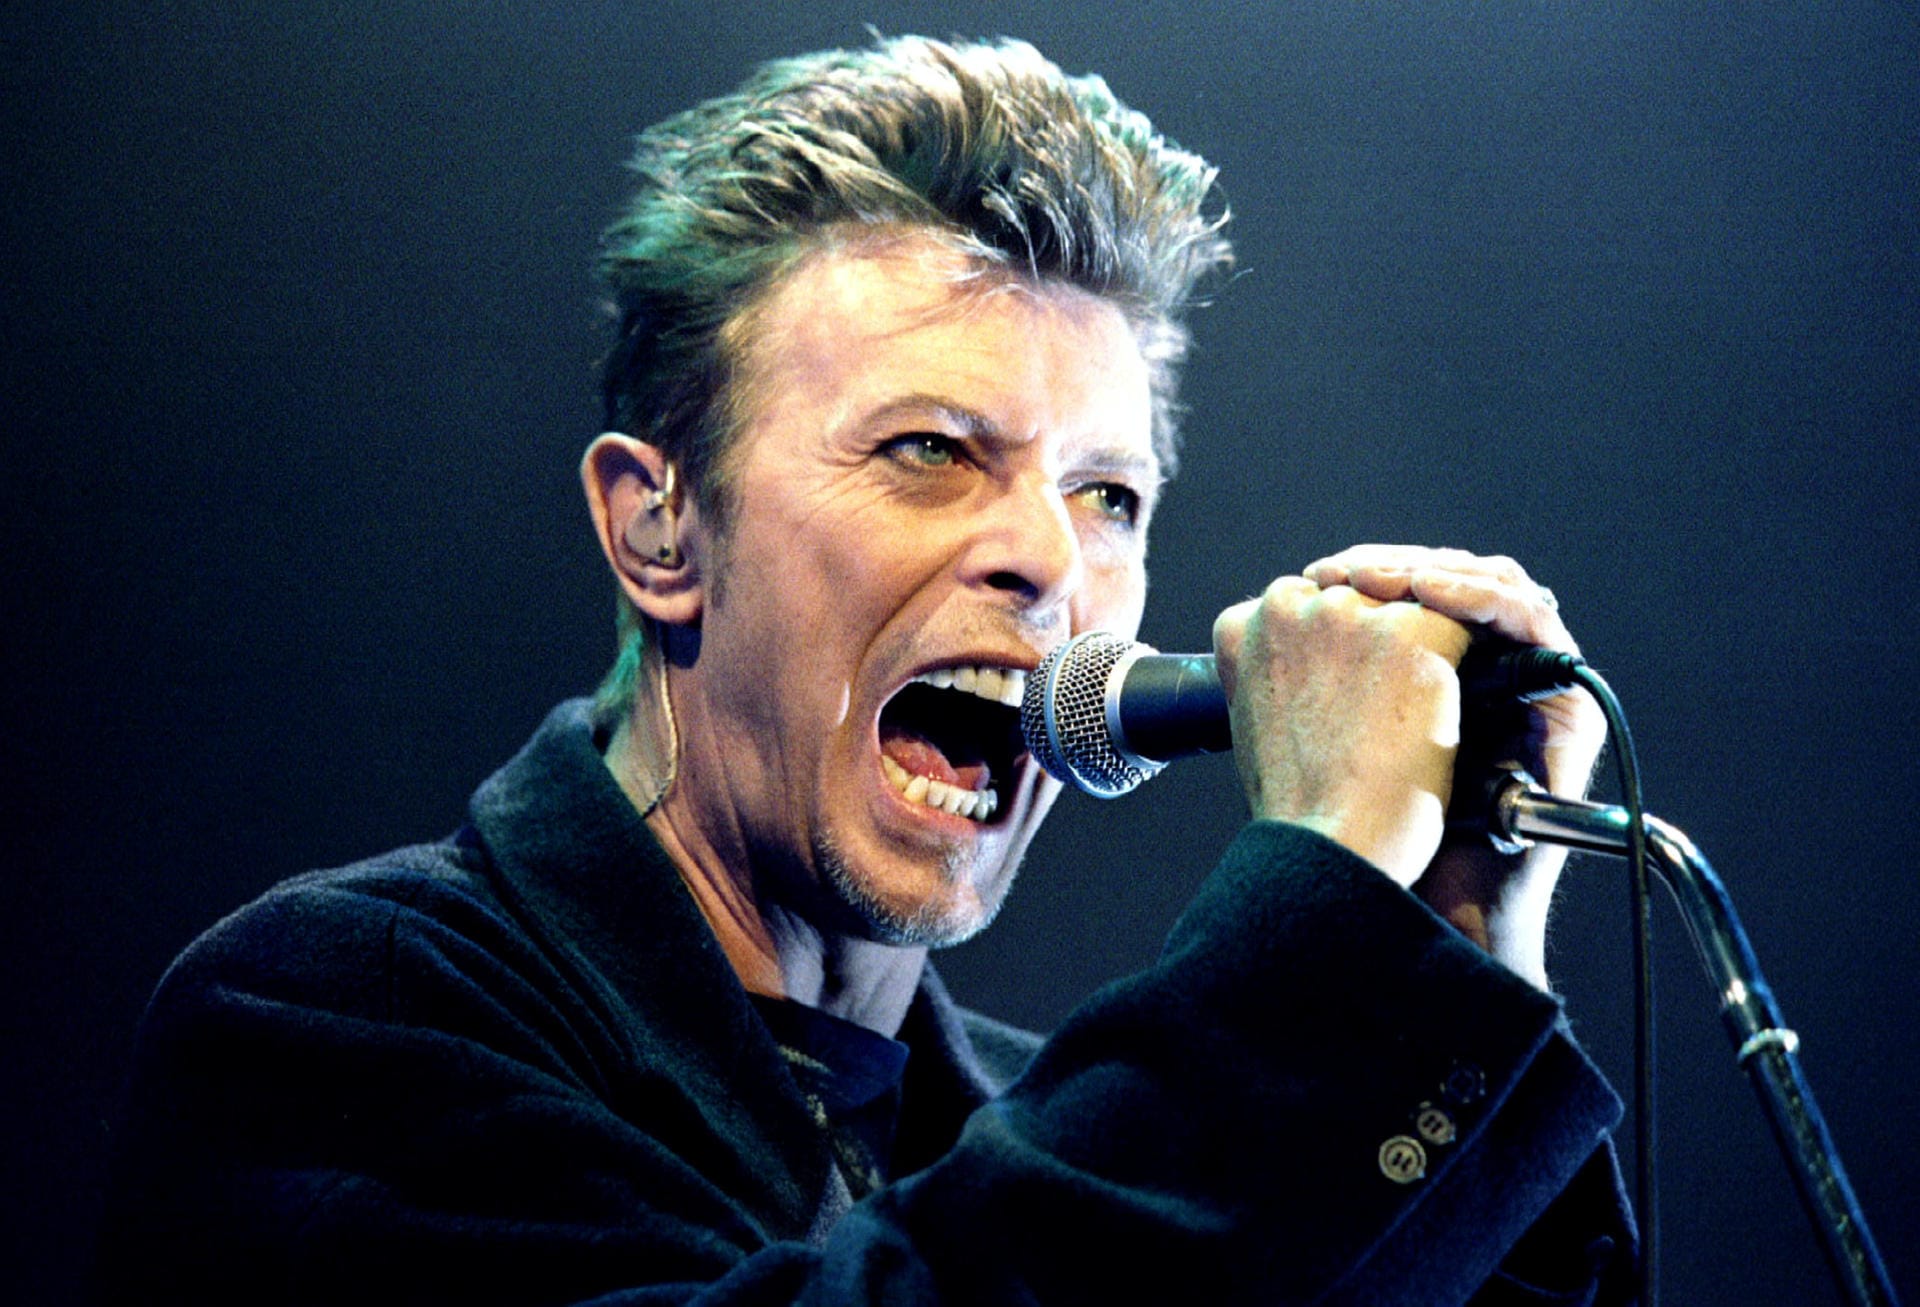 Nach einer längeren musikalischen Auszeit überraschte Bowie 2013 mit dem Comeback-Album "The Next Day", mit dem er an frühere Erfolge anknüpfe konnte.